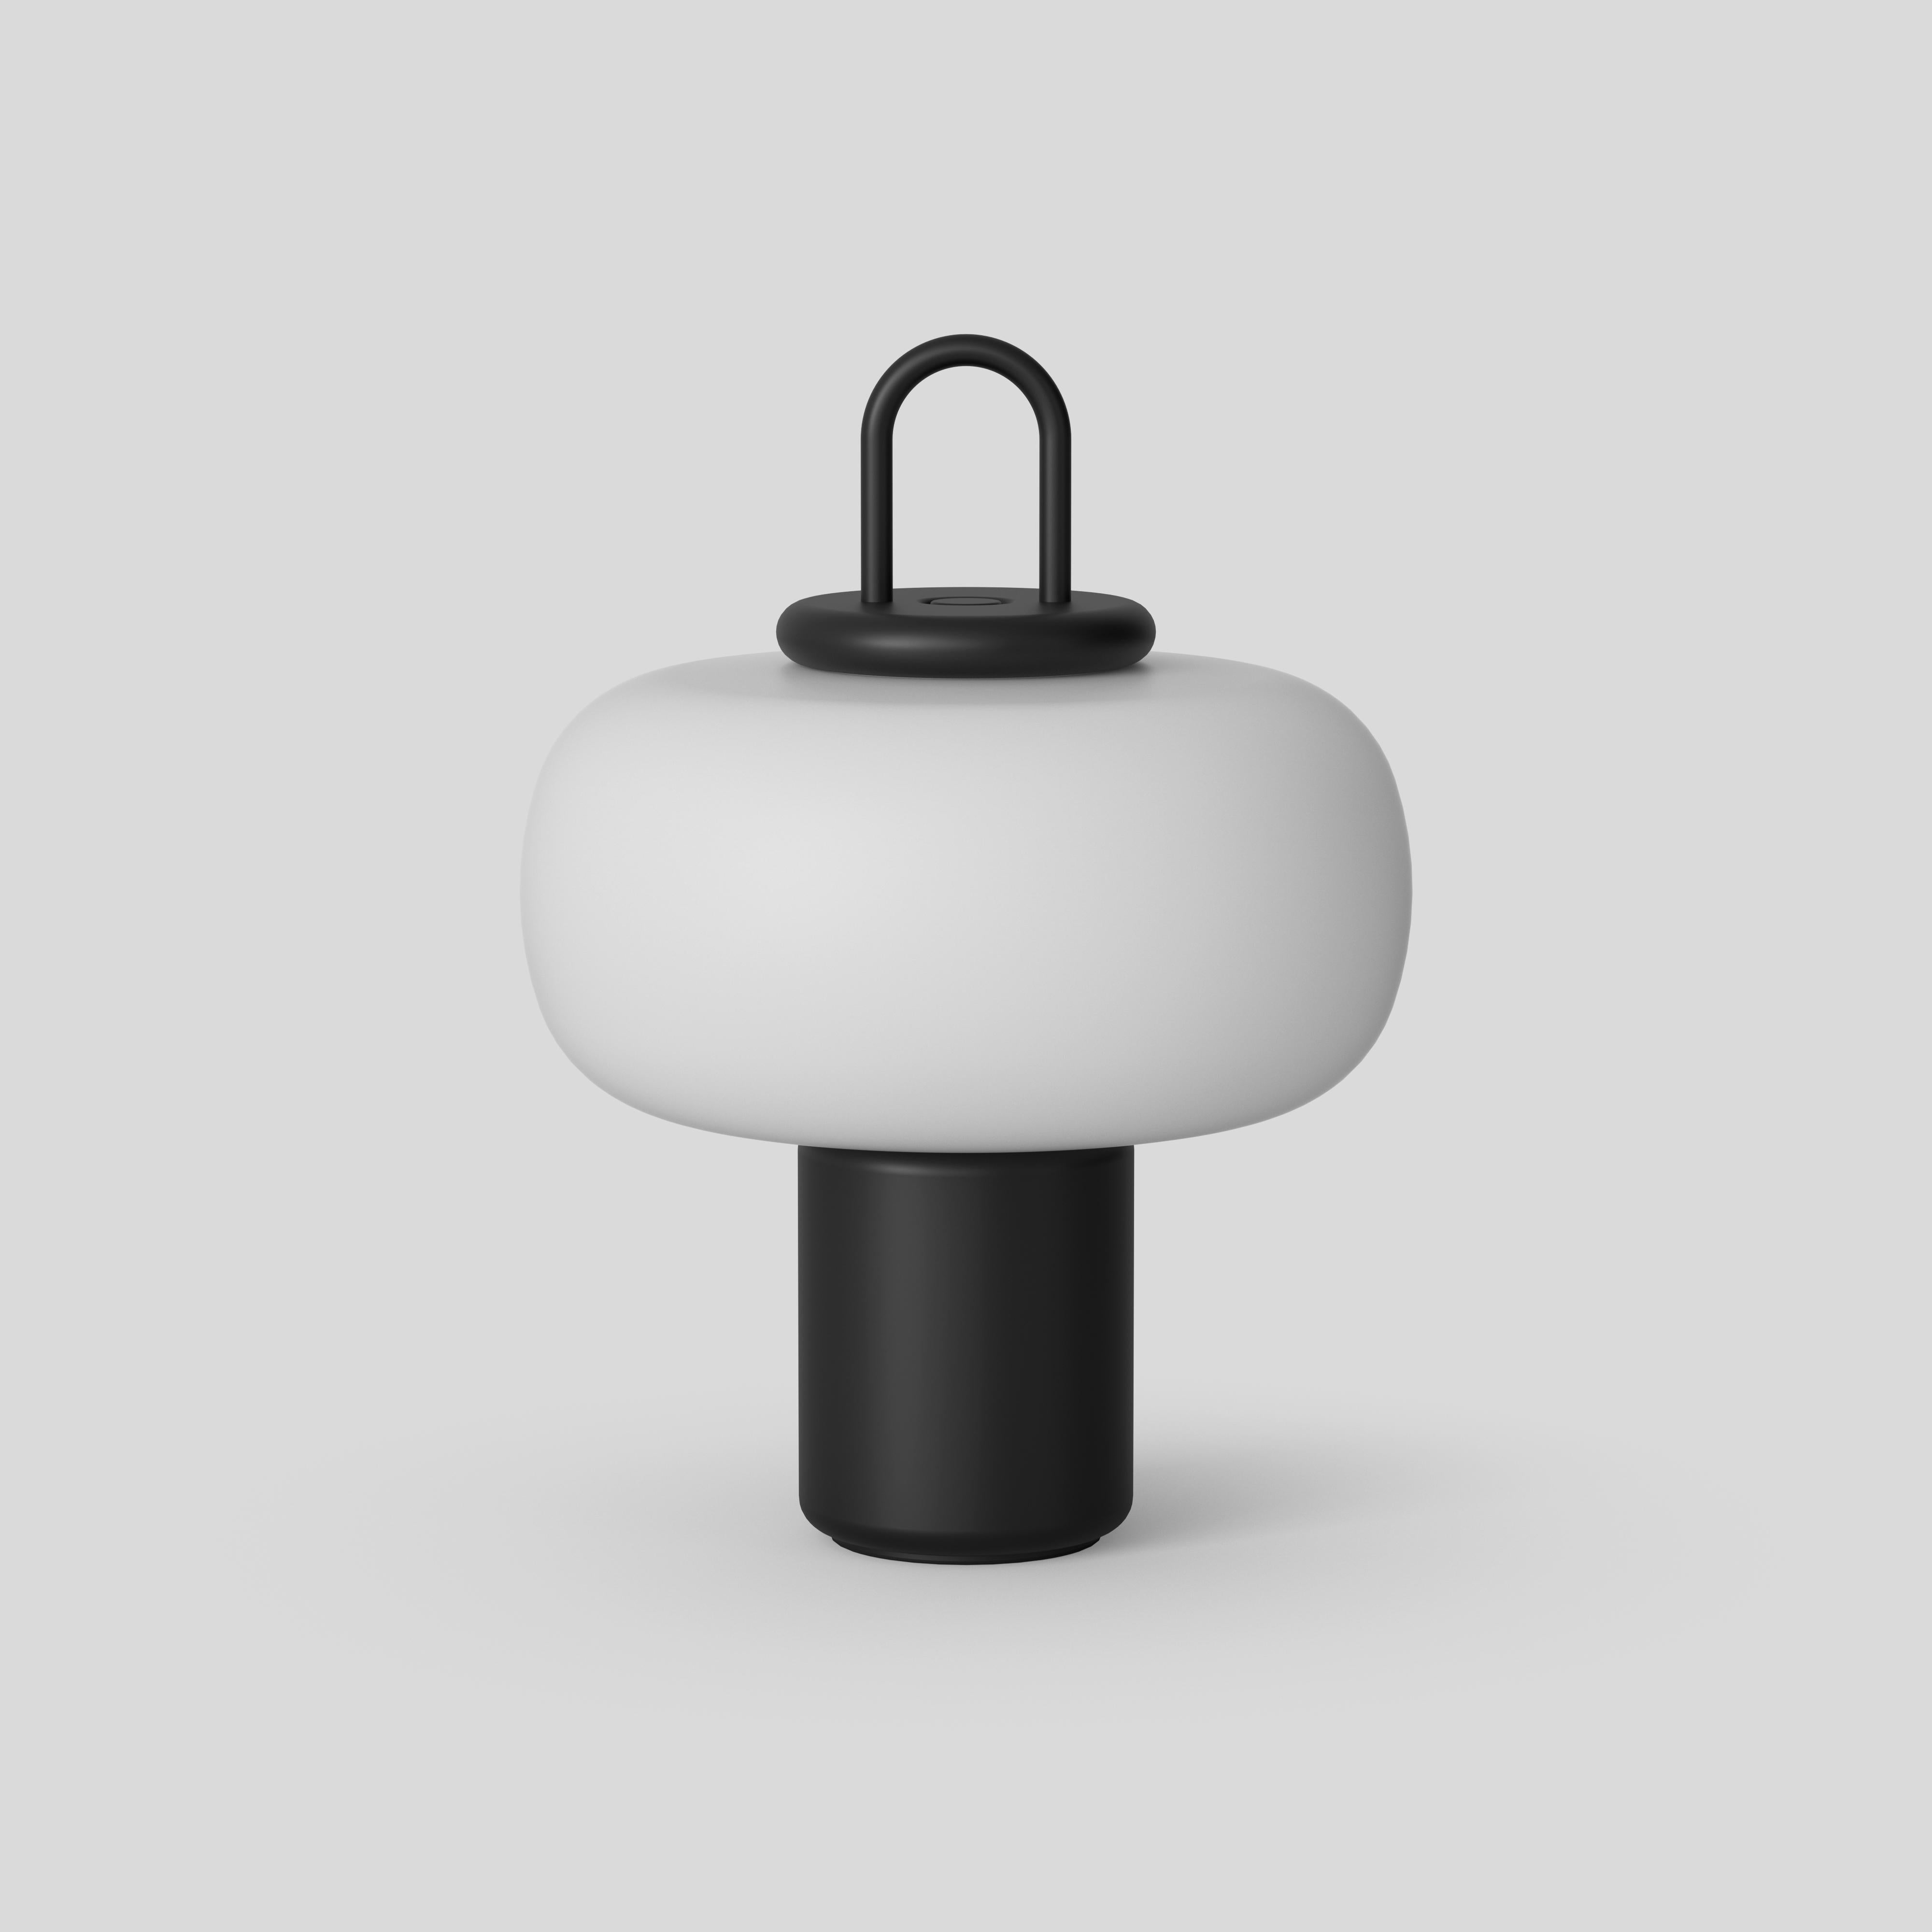 Nox
Design/One : Alfredo Häberli
La particularité de Nox est son système de chargement sans fil avec technologie d'induction, qui permet d'utiliser cette lampe sophistiquée et très polyvalente sans la brancher. Le Luminaire est composé de quatre